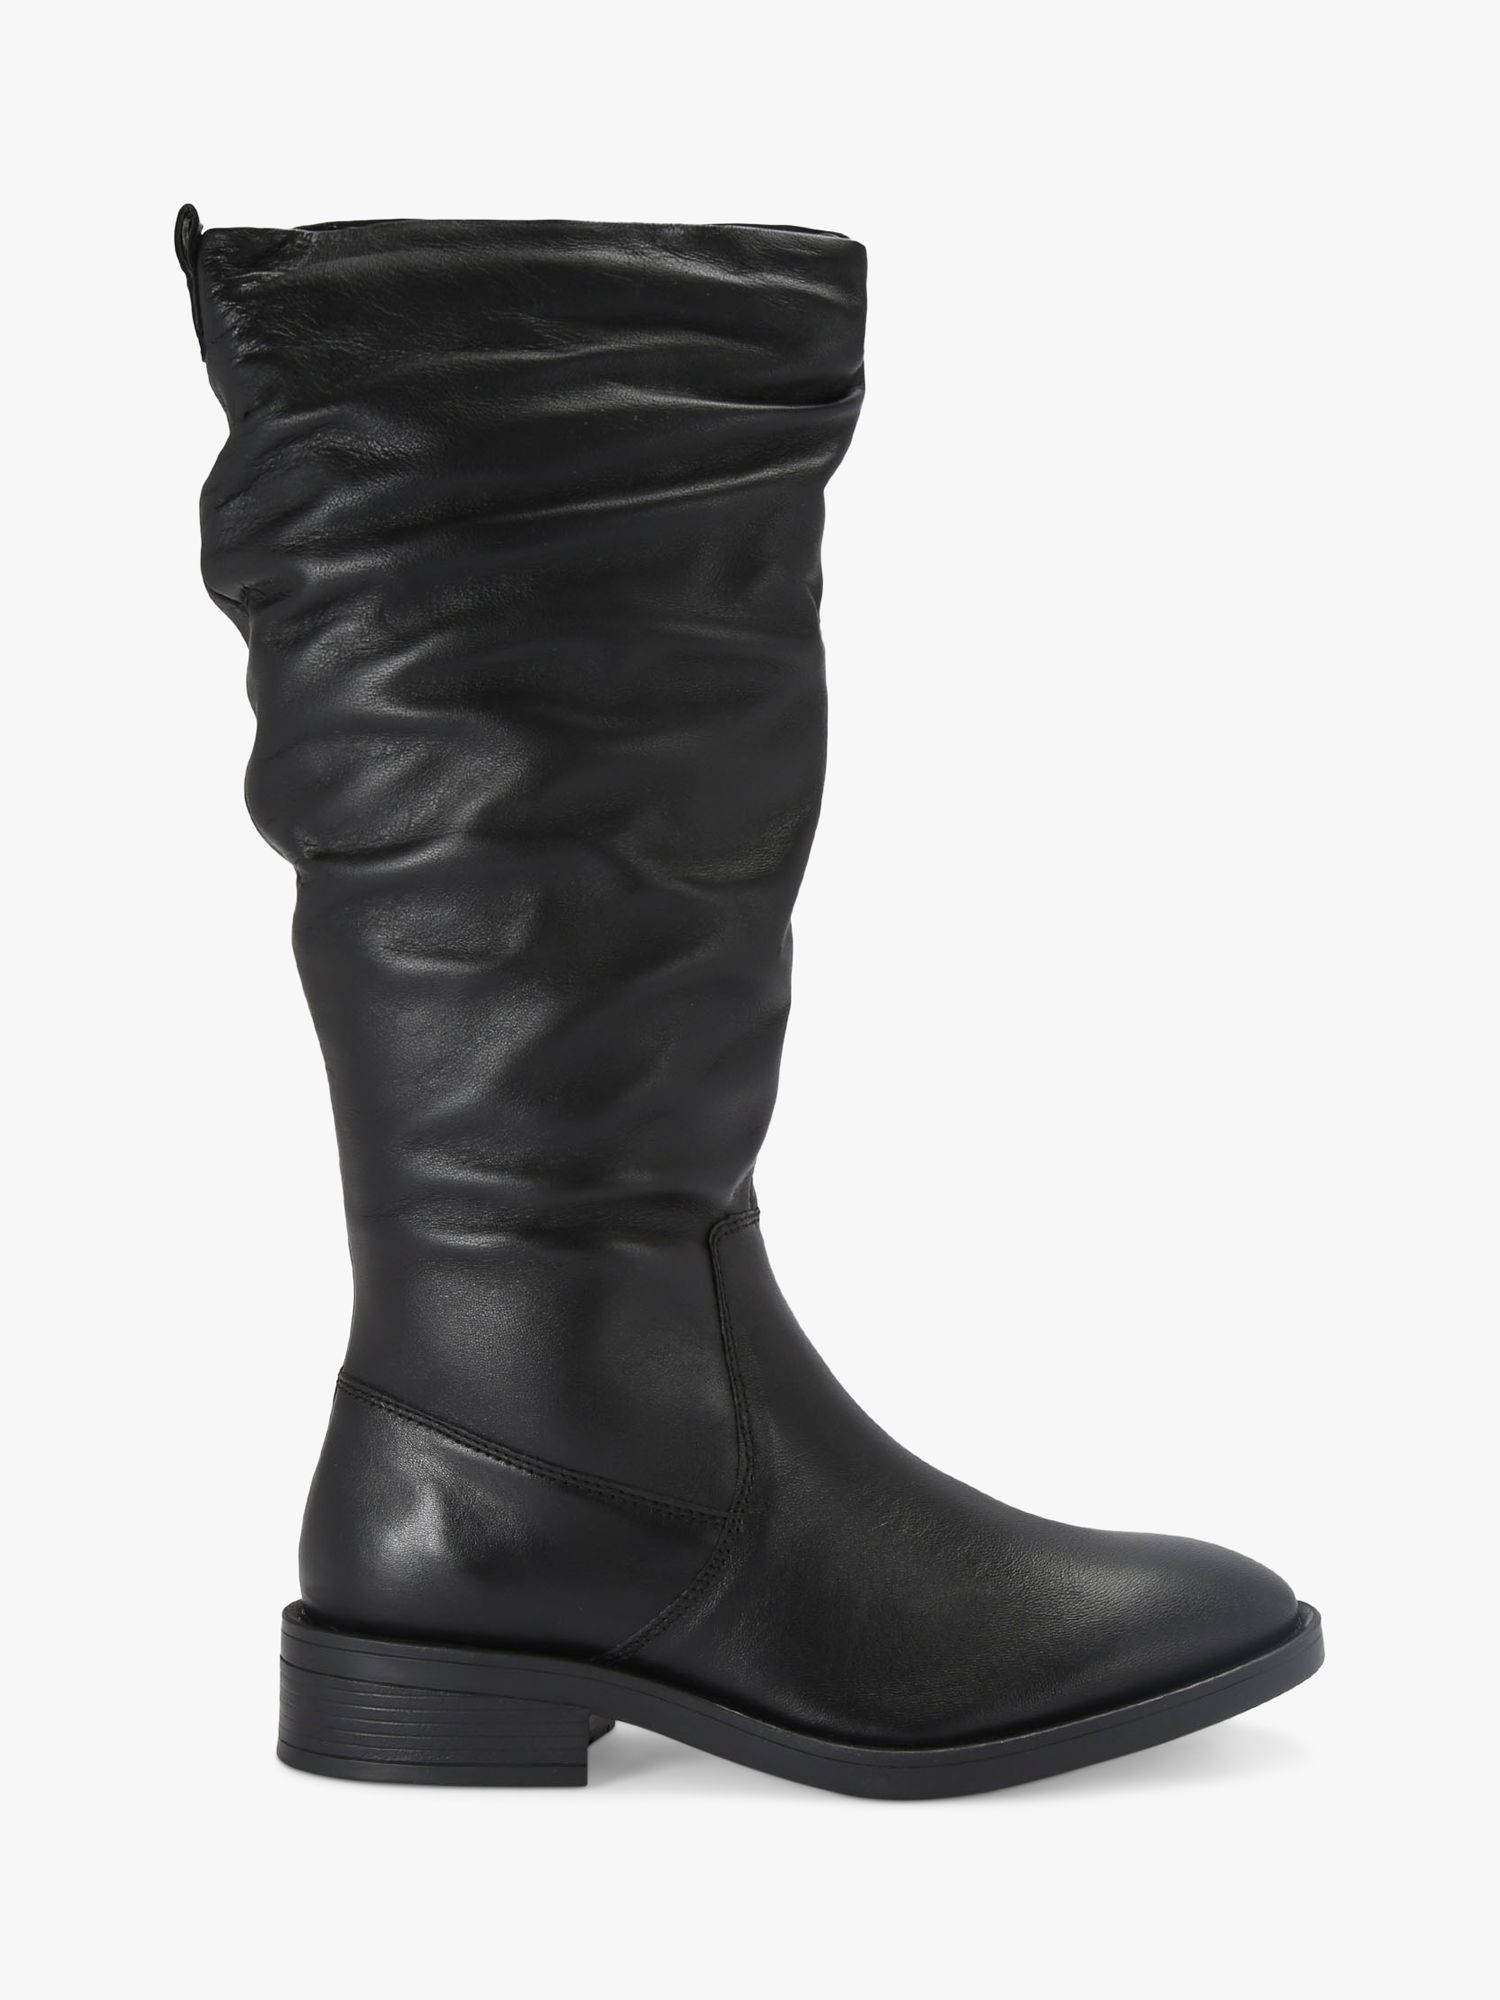 Carvela Parlour Leather Calf Boots, Black, 2